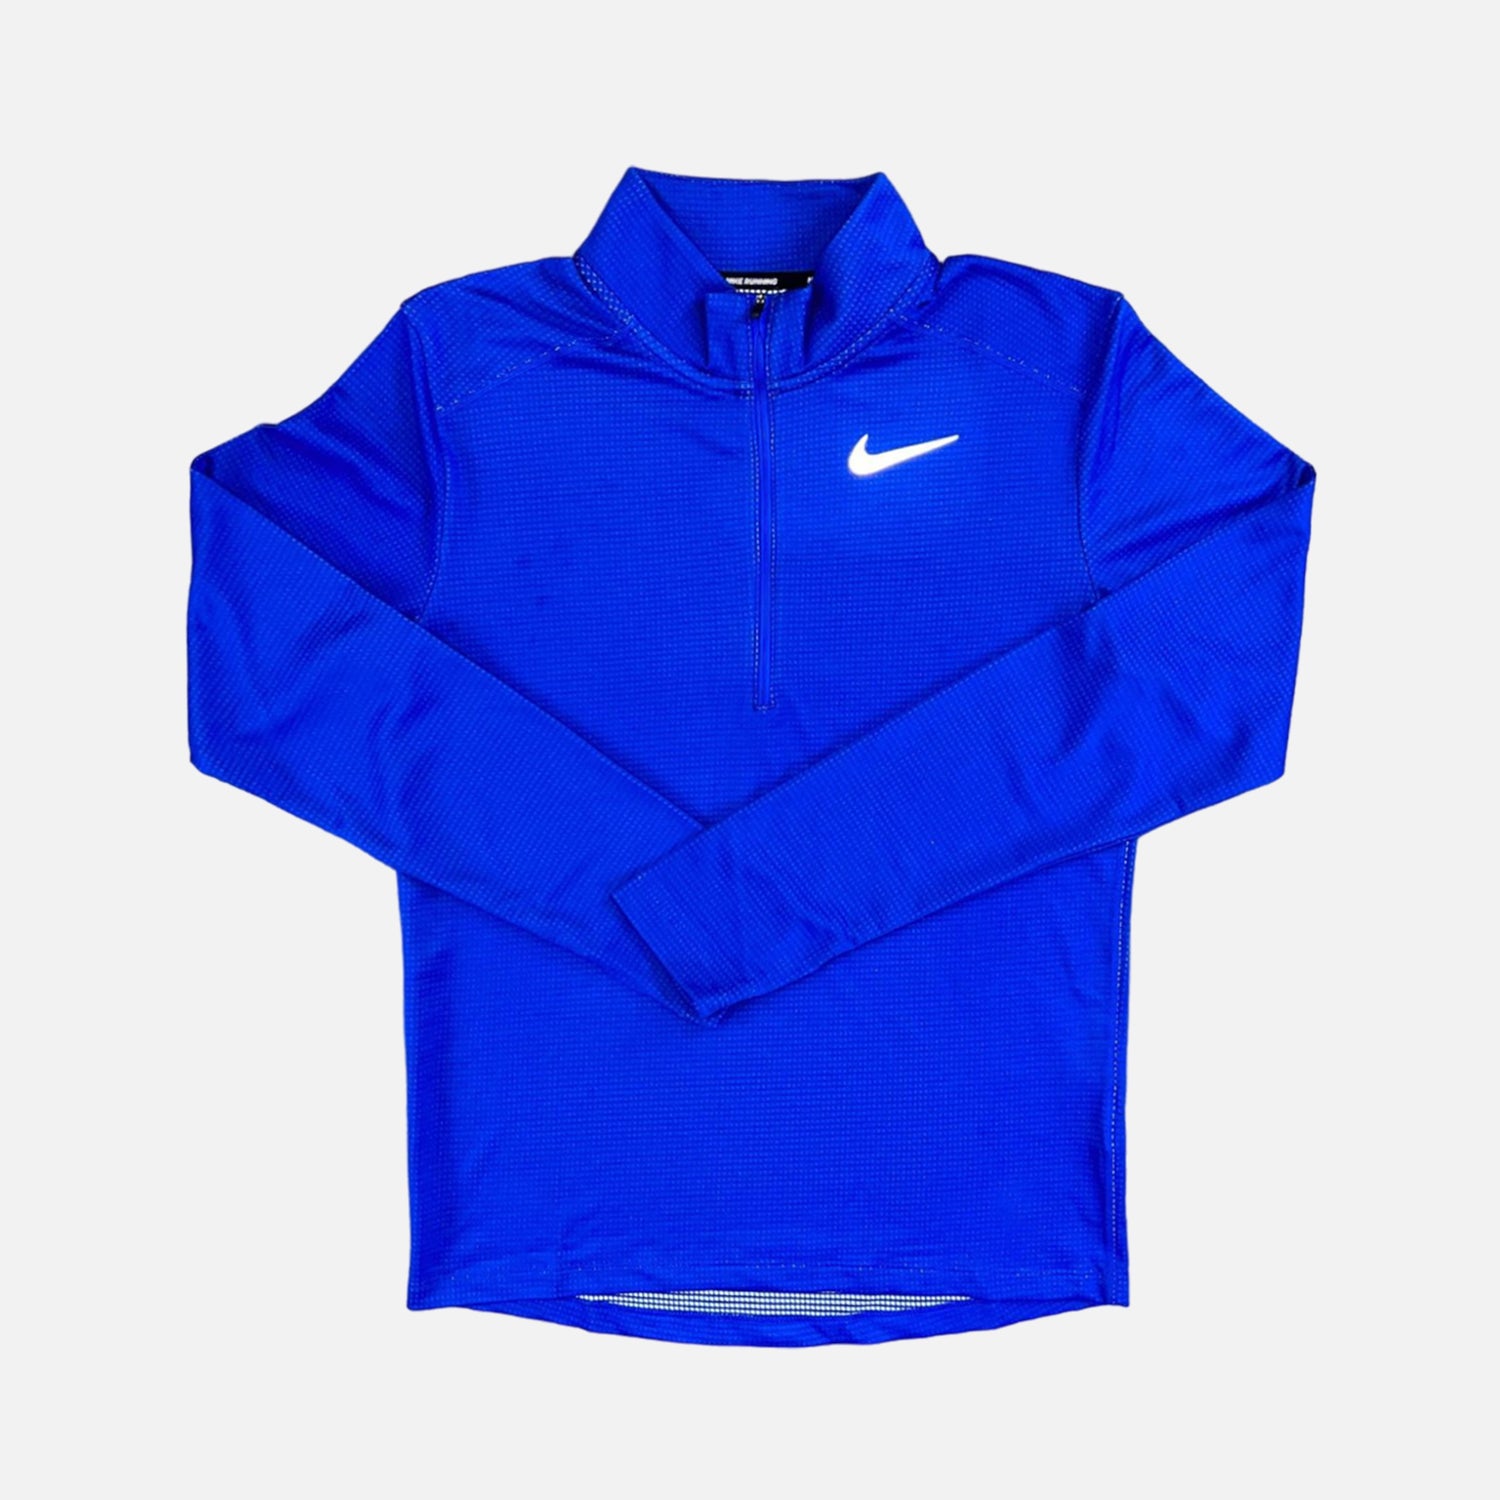 Nike Pacer Half Zip - Blue